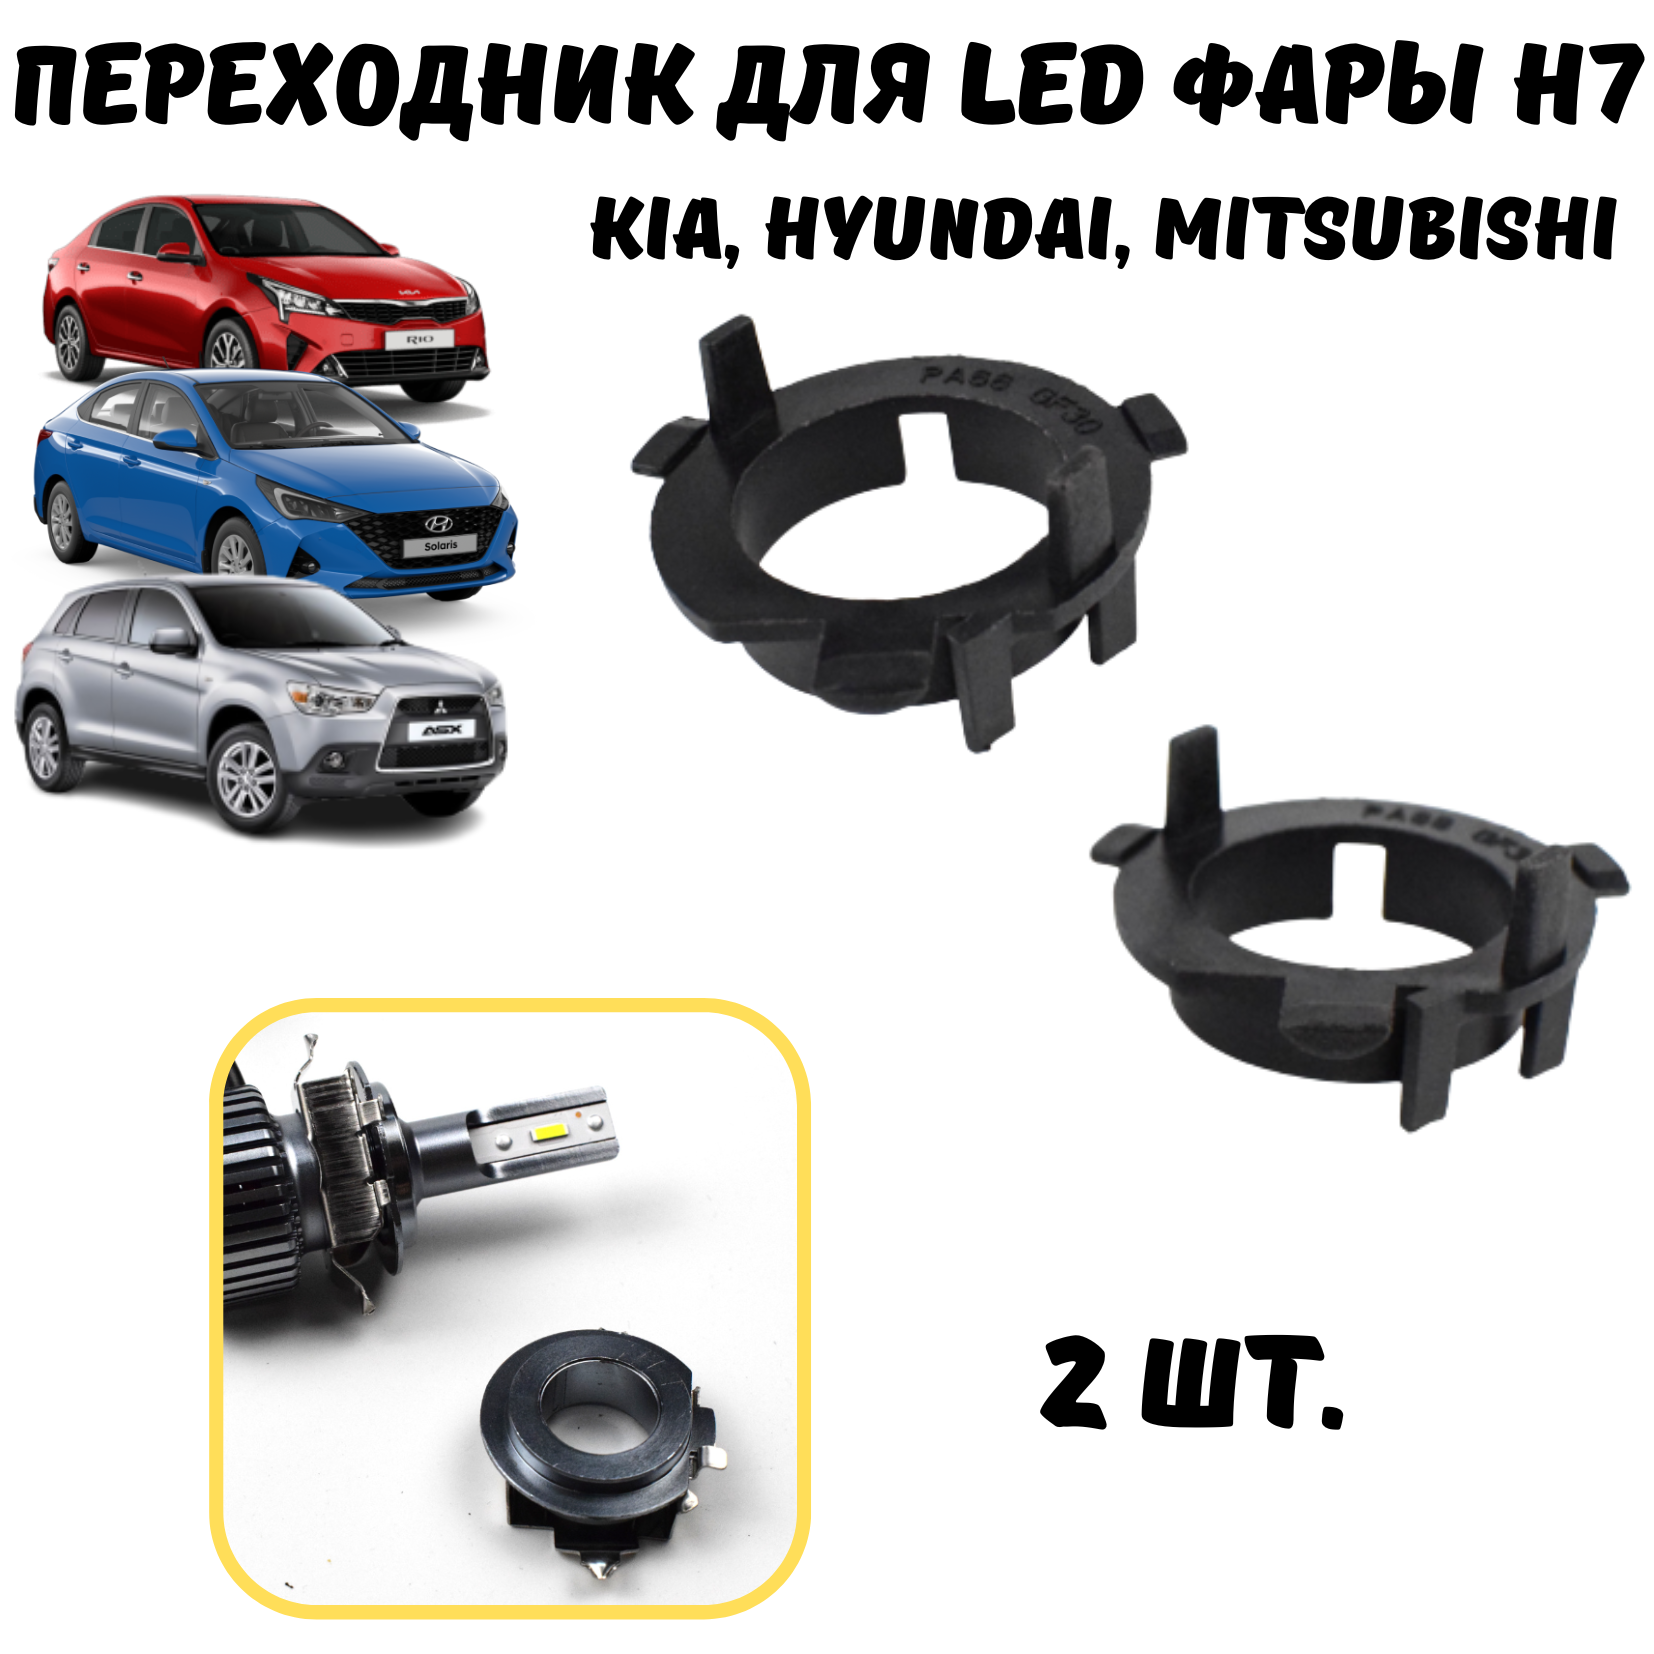 Переходник h7 led, для установки светодиодных ламп Kia, Hyundai, Mitsubishi